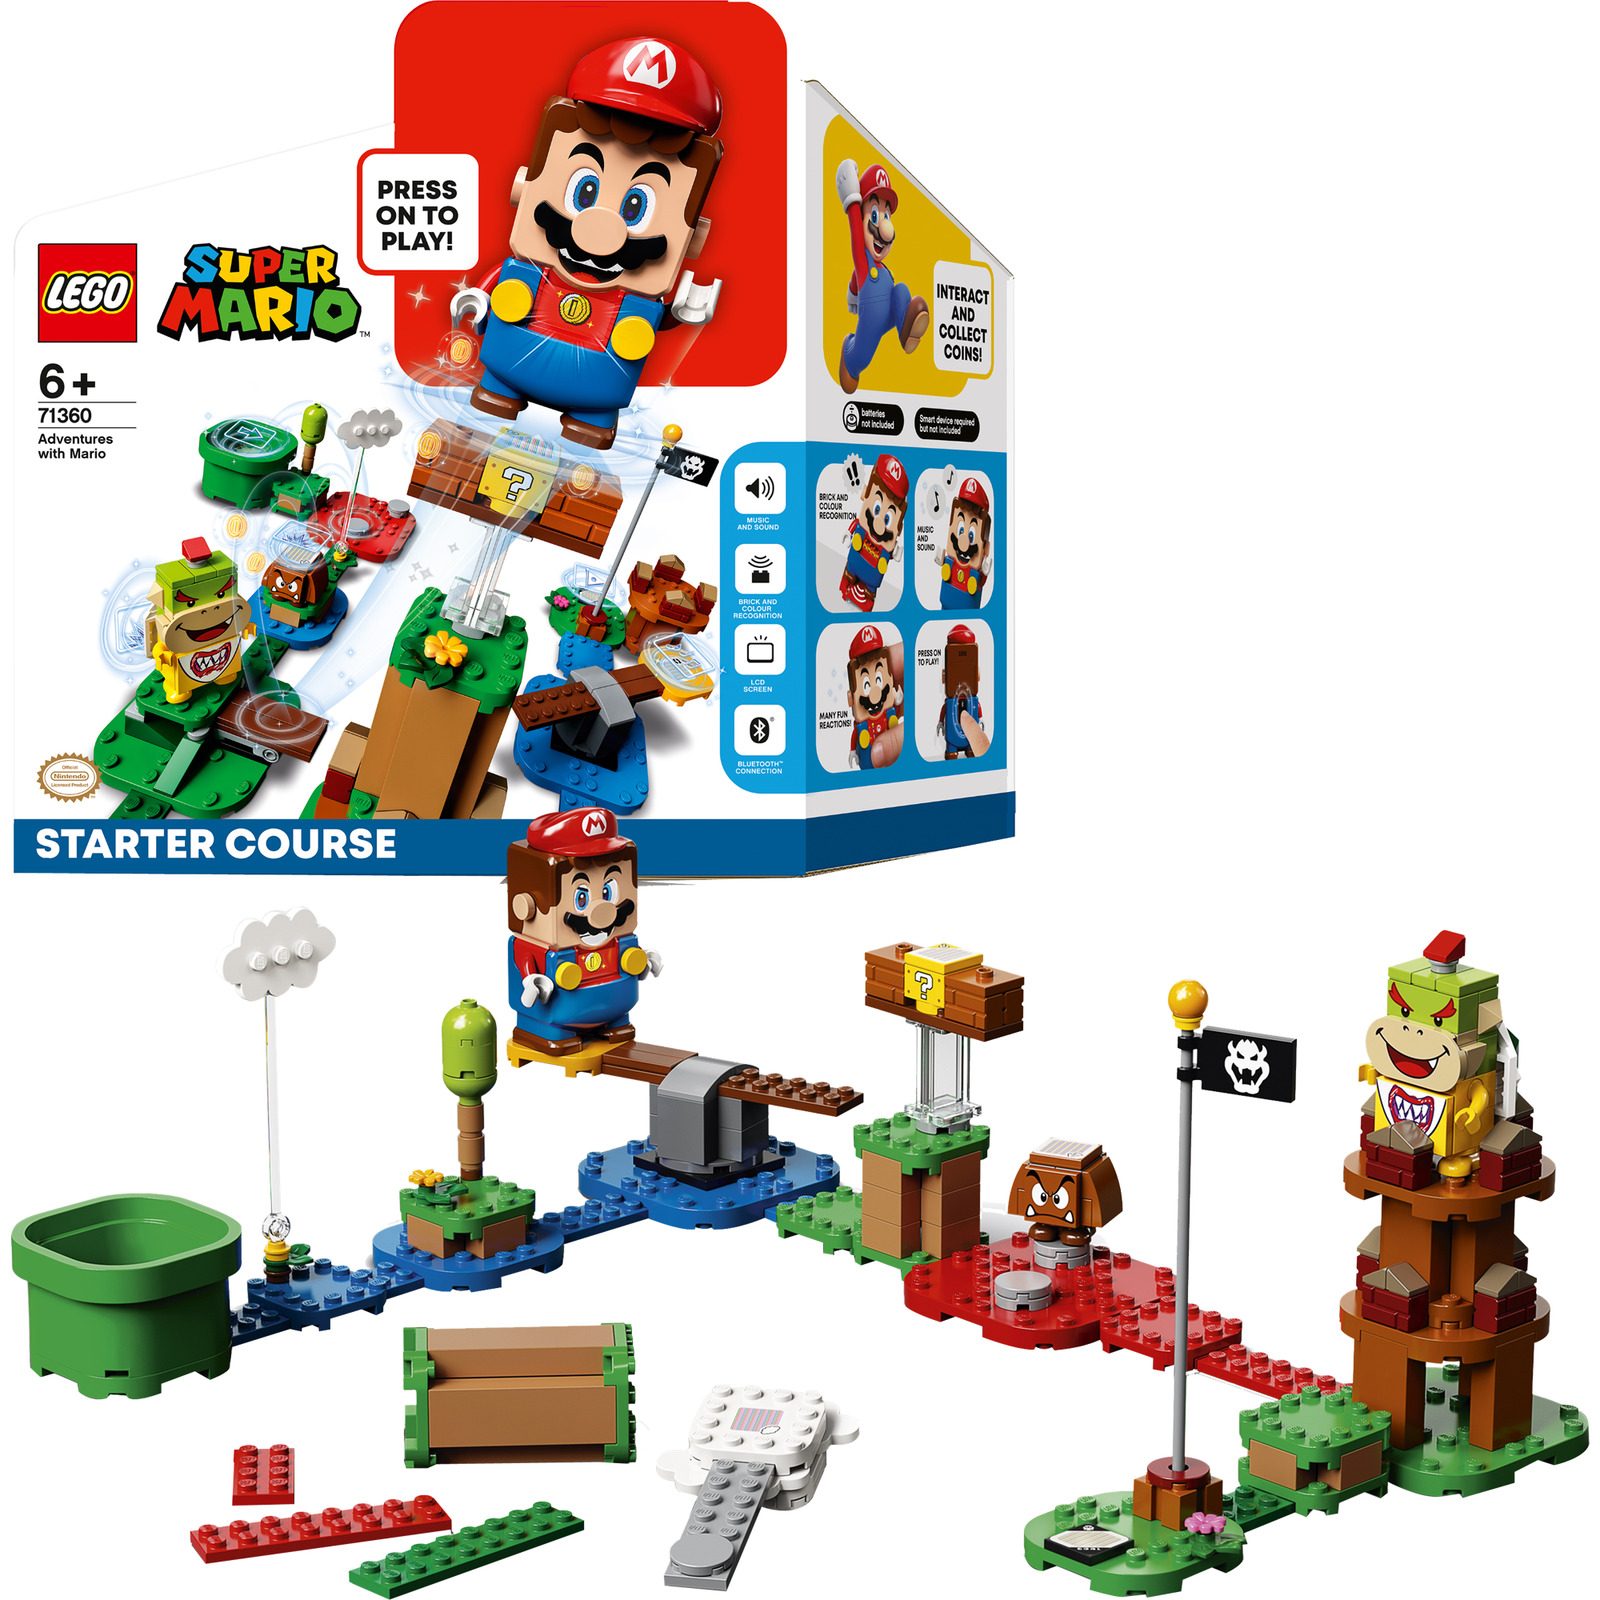 LEGO SUPER MARIO 71360 ADVENTURES WITH MARIO - STARTER COURSE LEGO konstruktors